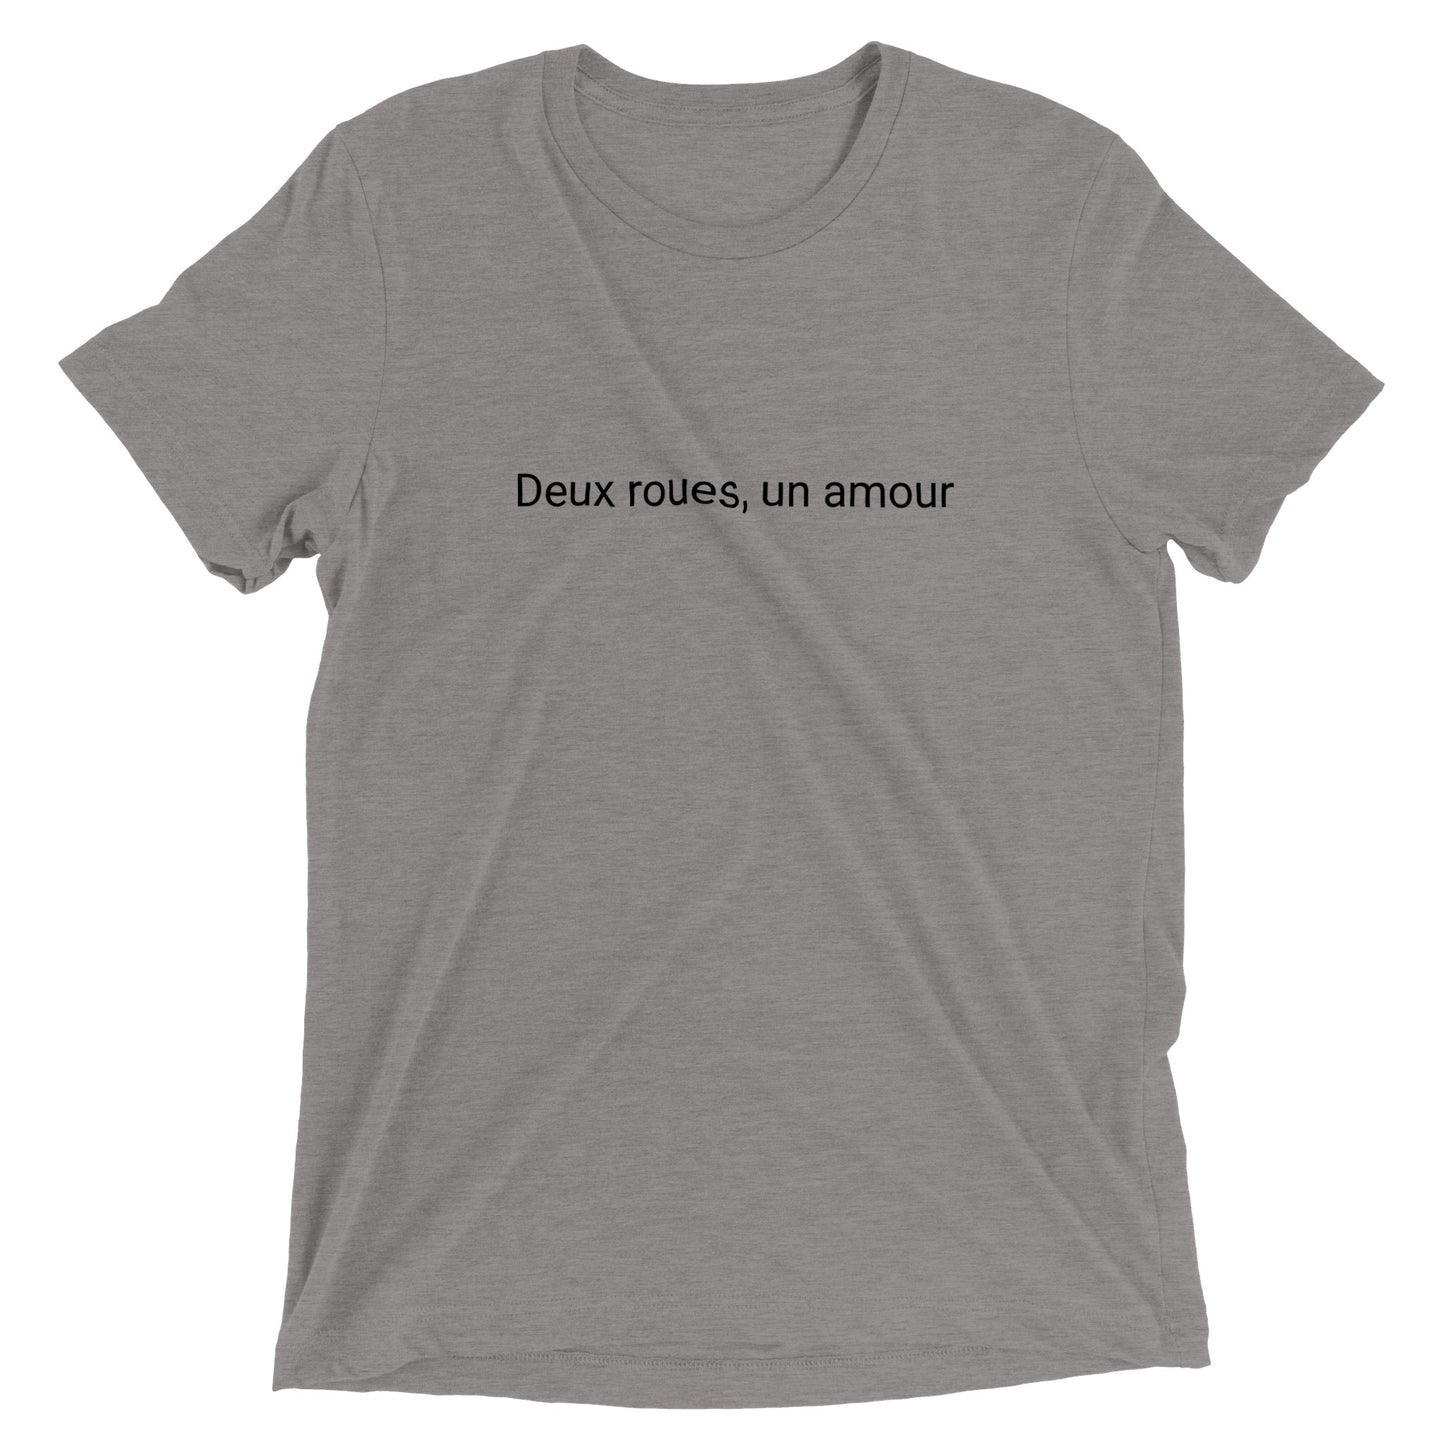 Deux roues, un amour - Camiseta de cuello redondo unisex Triblend